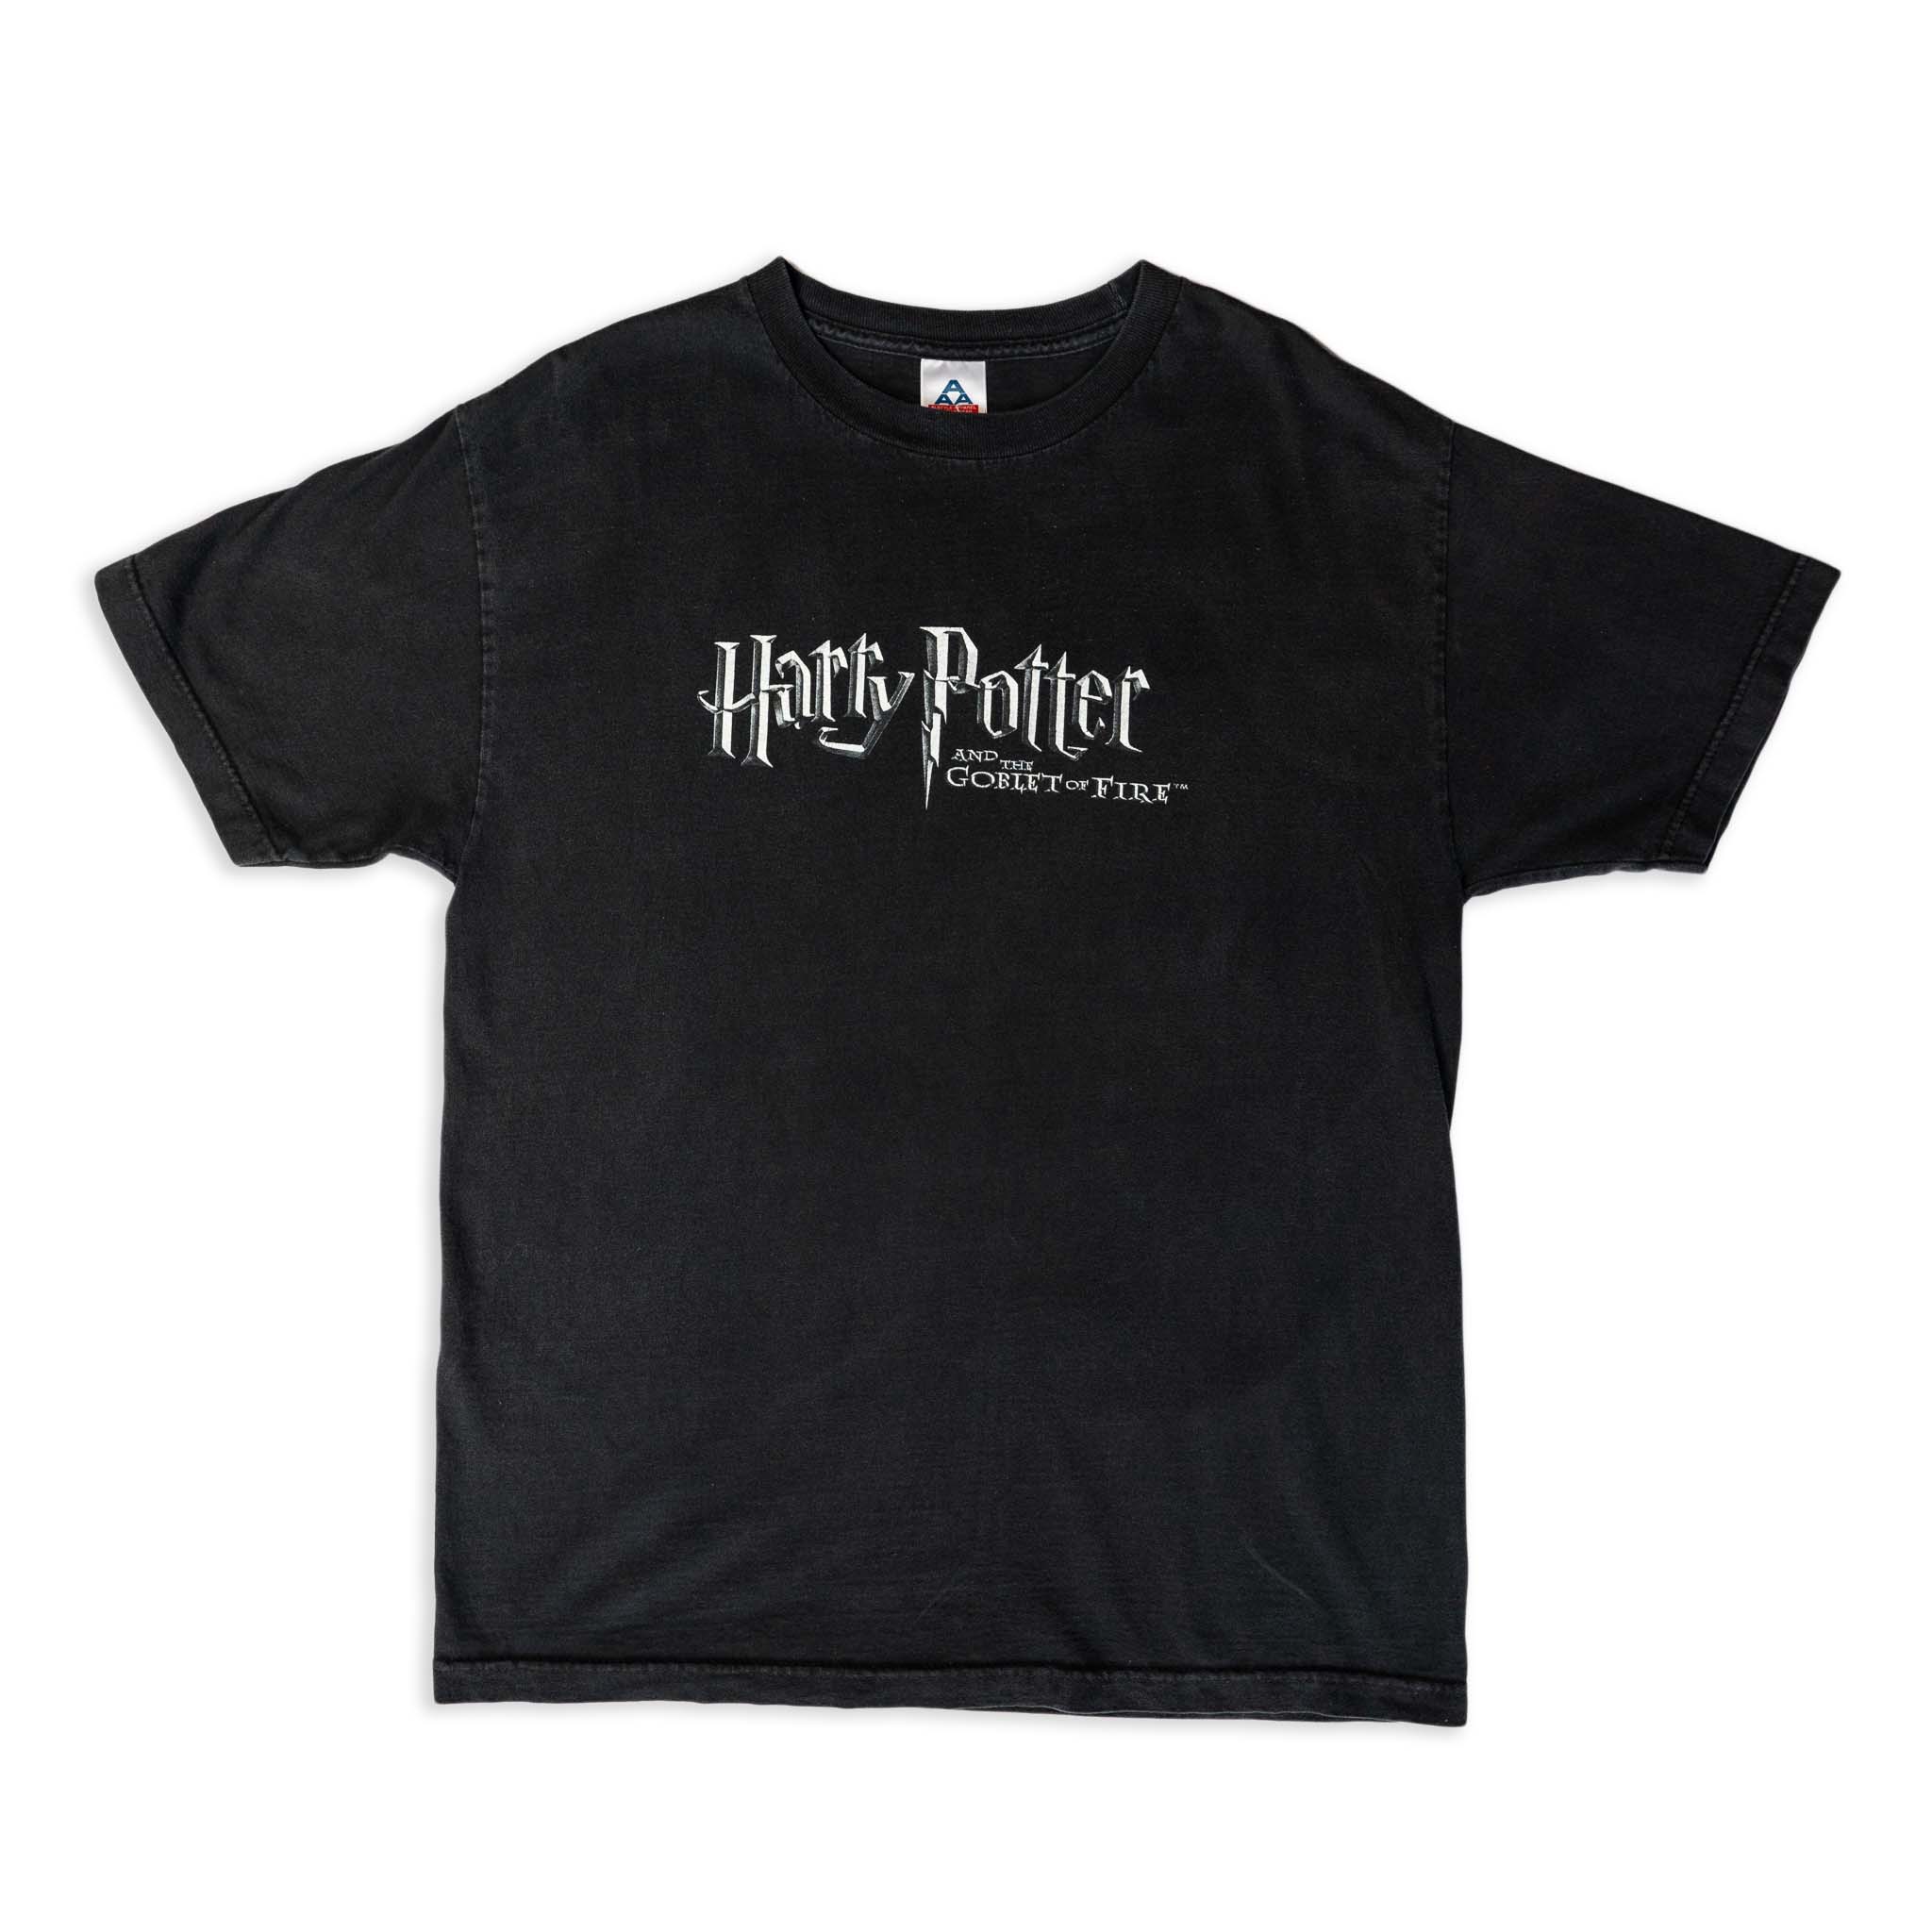 予約販売 XL Movie Potter Harry Tee Tシャツ ハリーポッター トップス ...